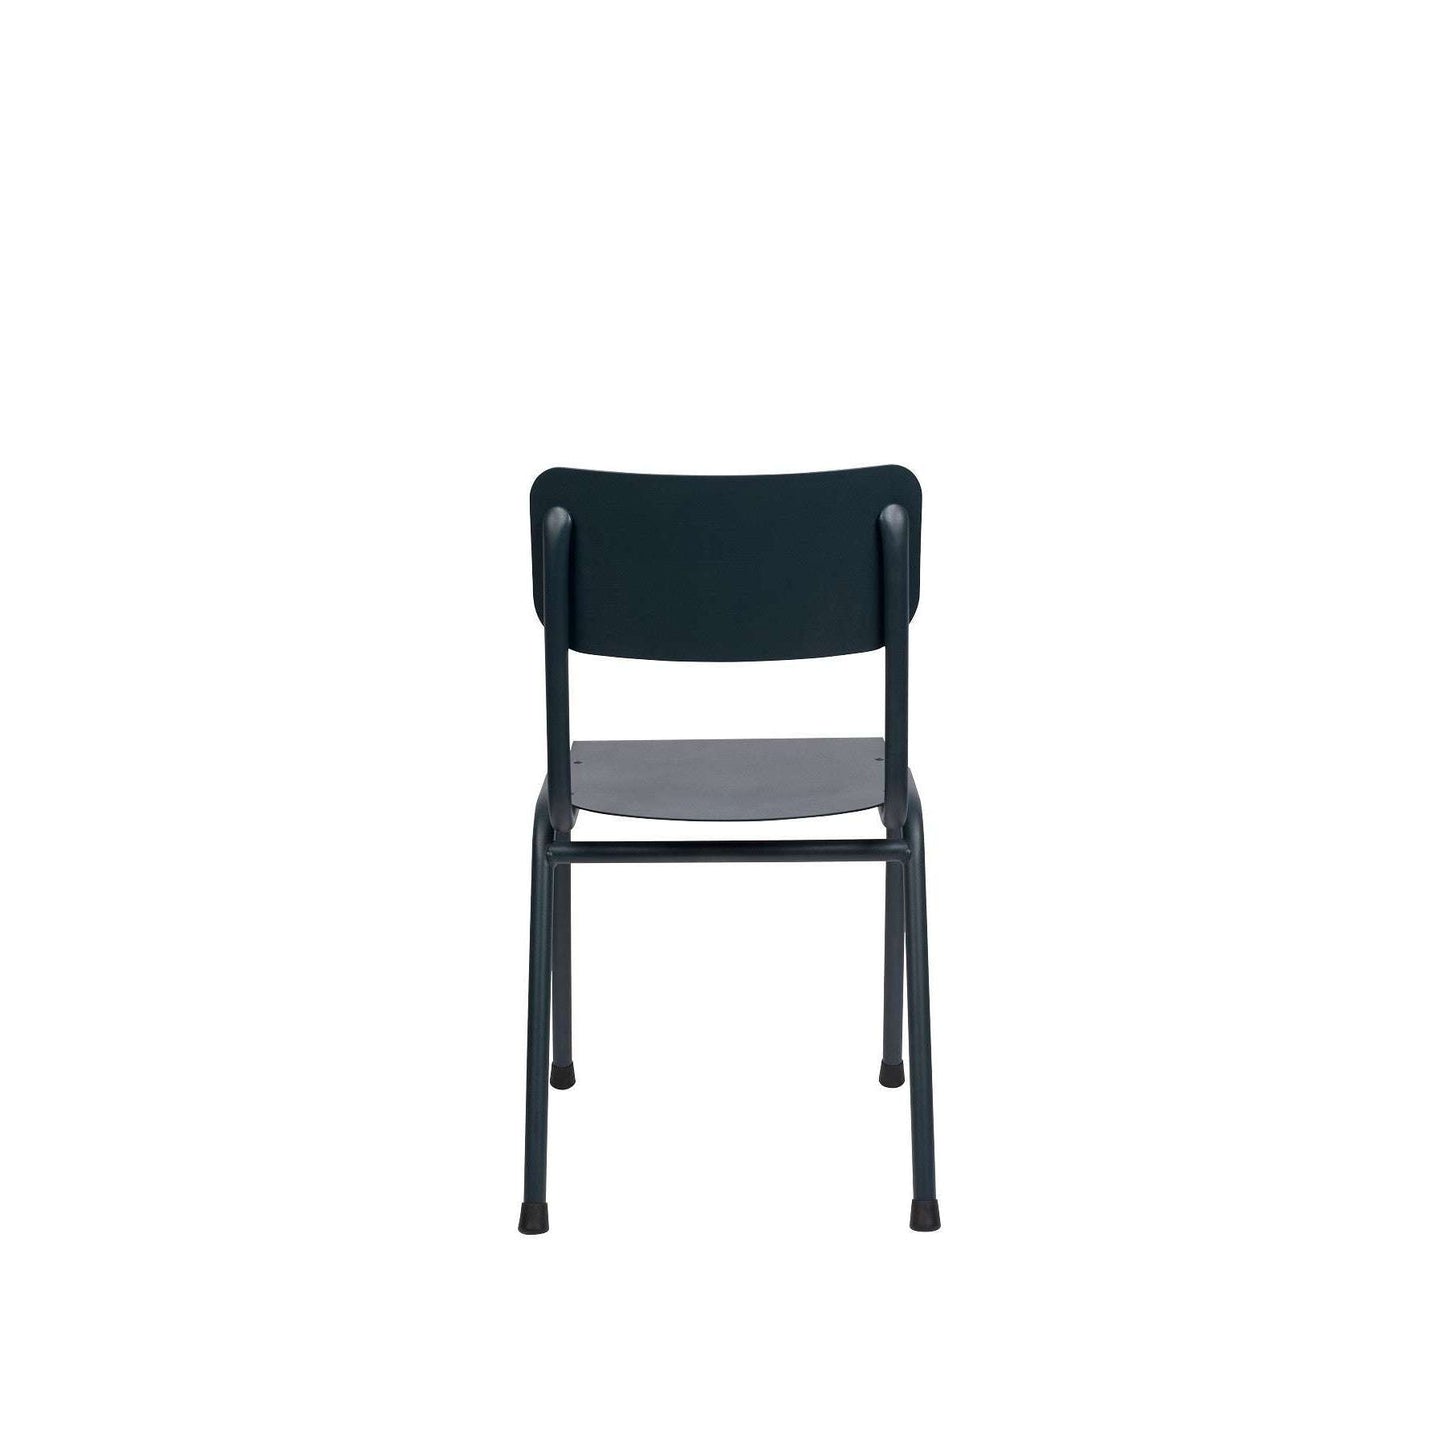 Zuiver stoel back to school grijs blauw 49 x 43 x 82,5 cm